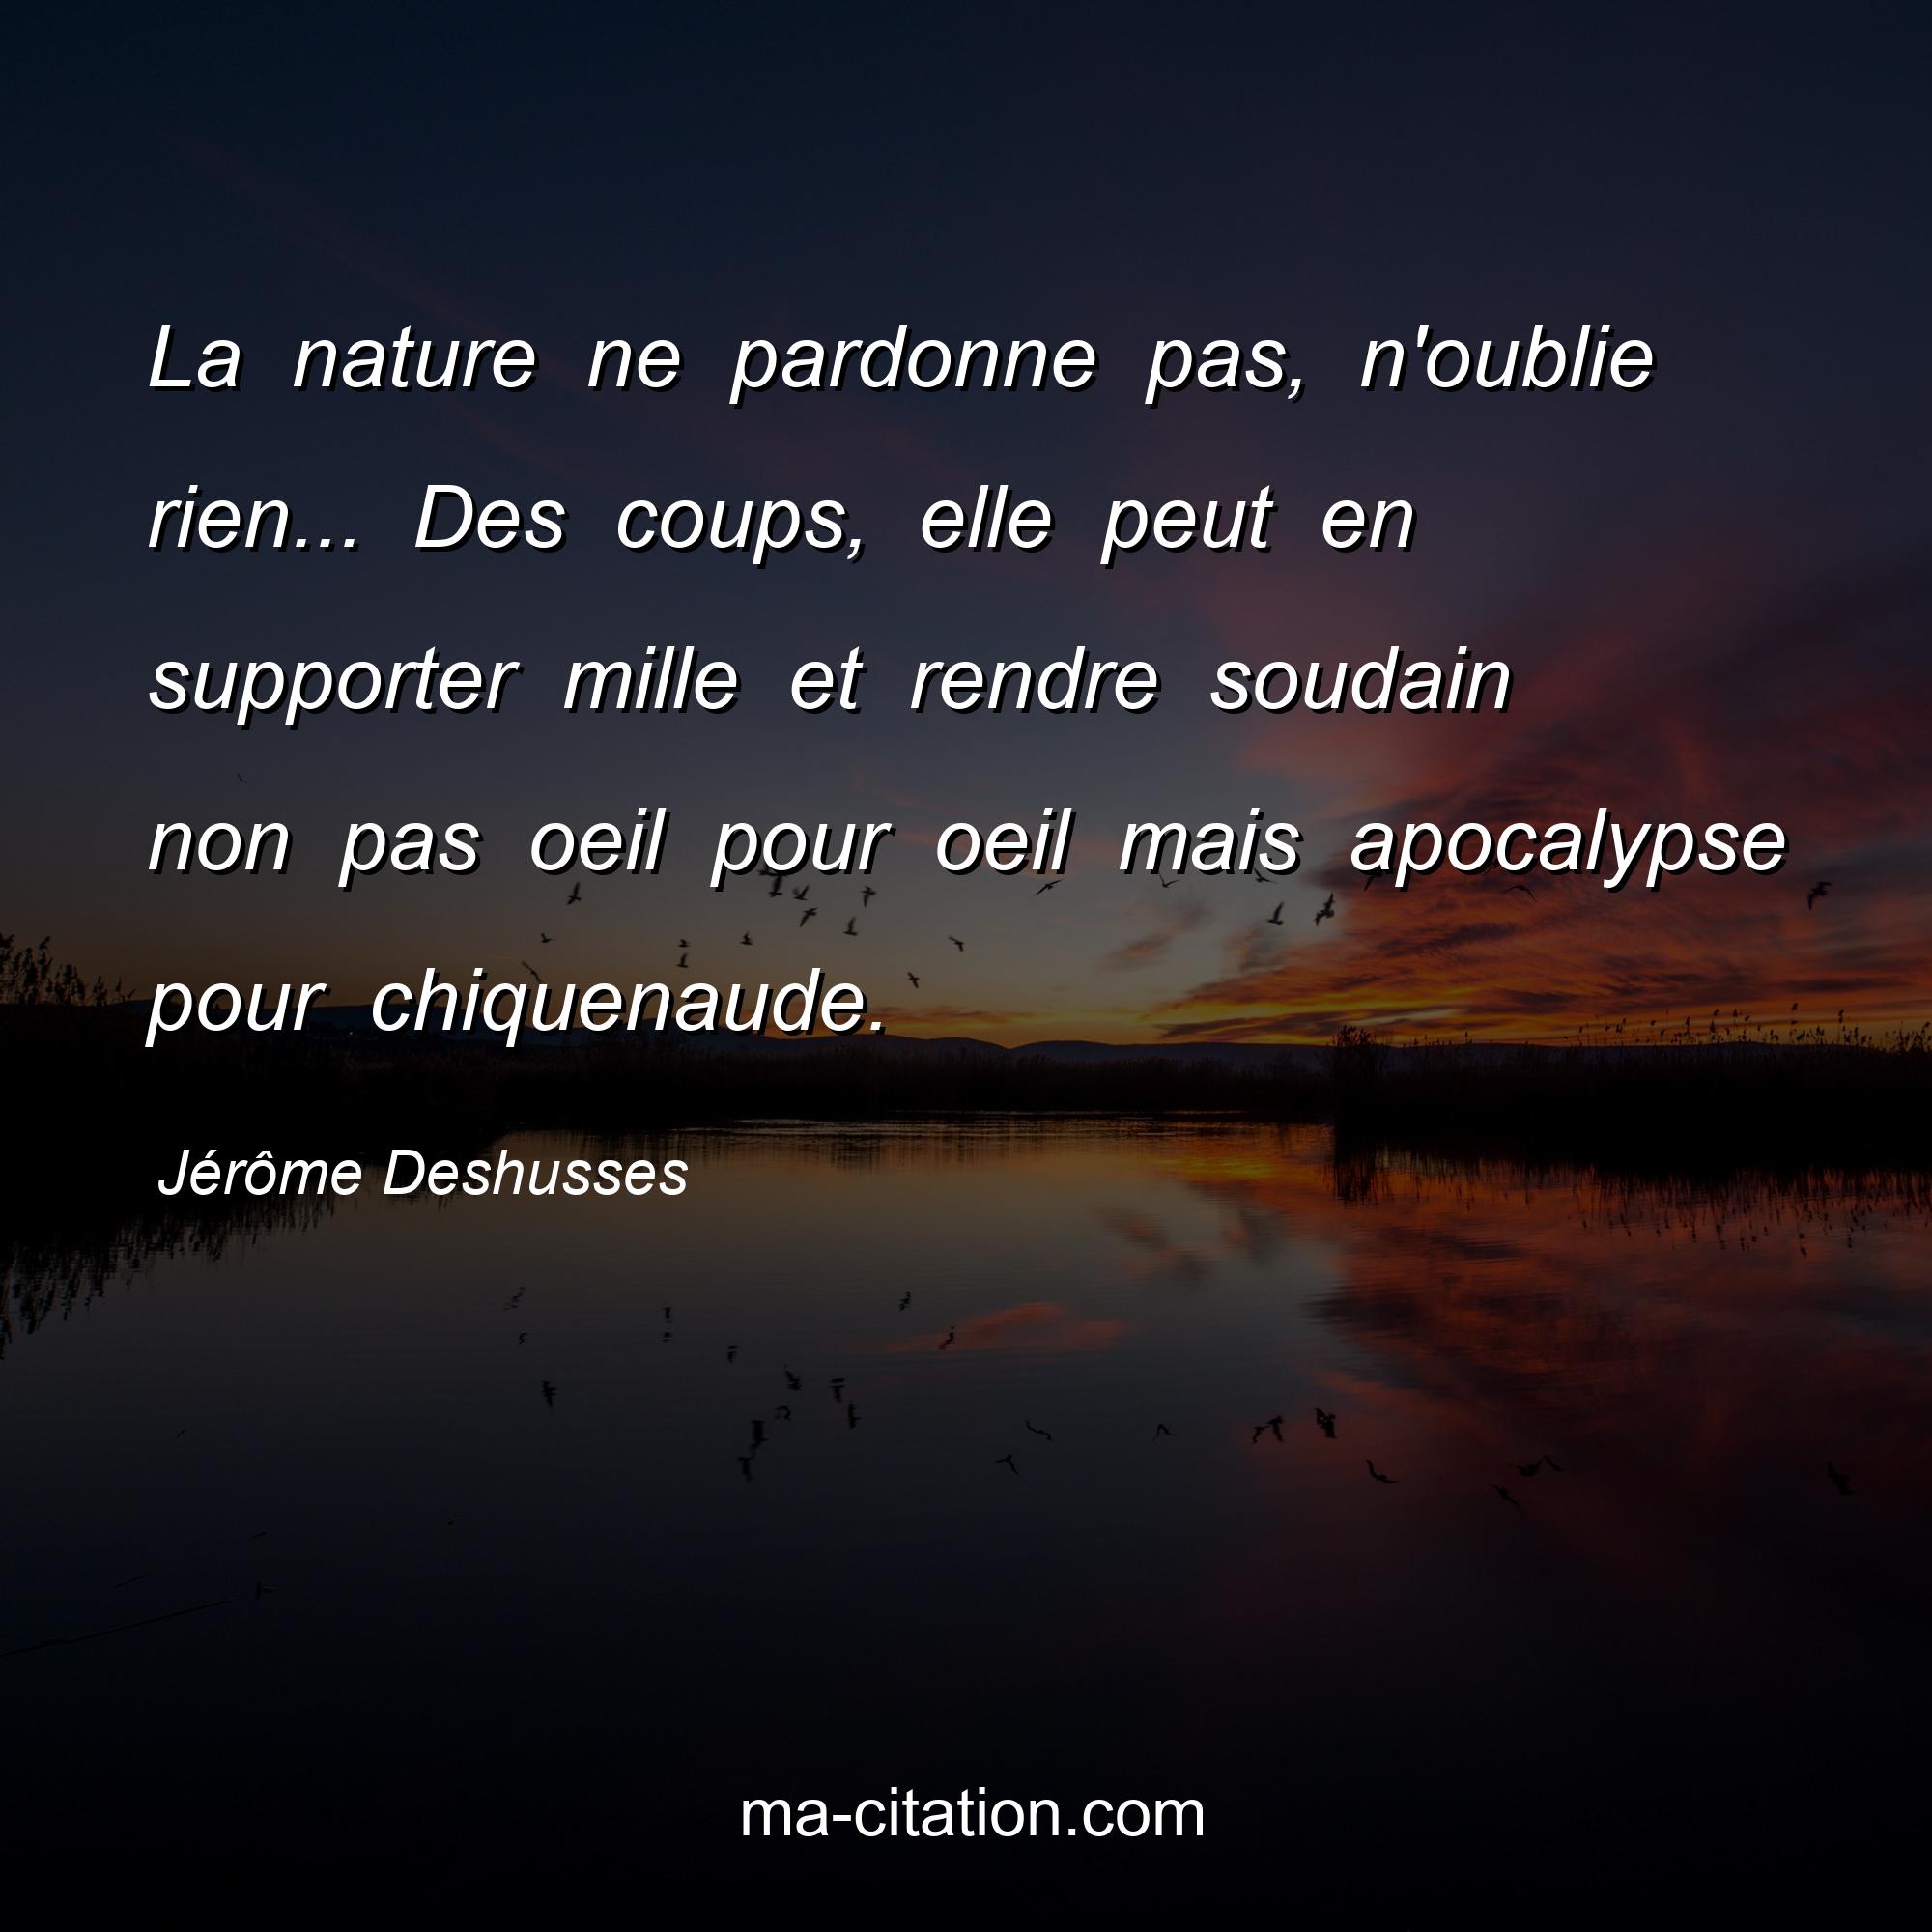 Jérôme Deshusses : La nature ne pardonne pas, n'oublie rien... Des coups, elle peut en supporter mille et rendre soudain non pas oeil pour oeil mais apocalypse pour chiquenaude.